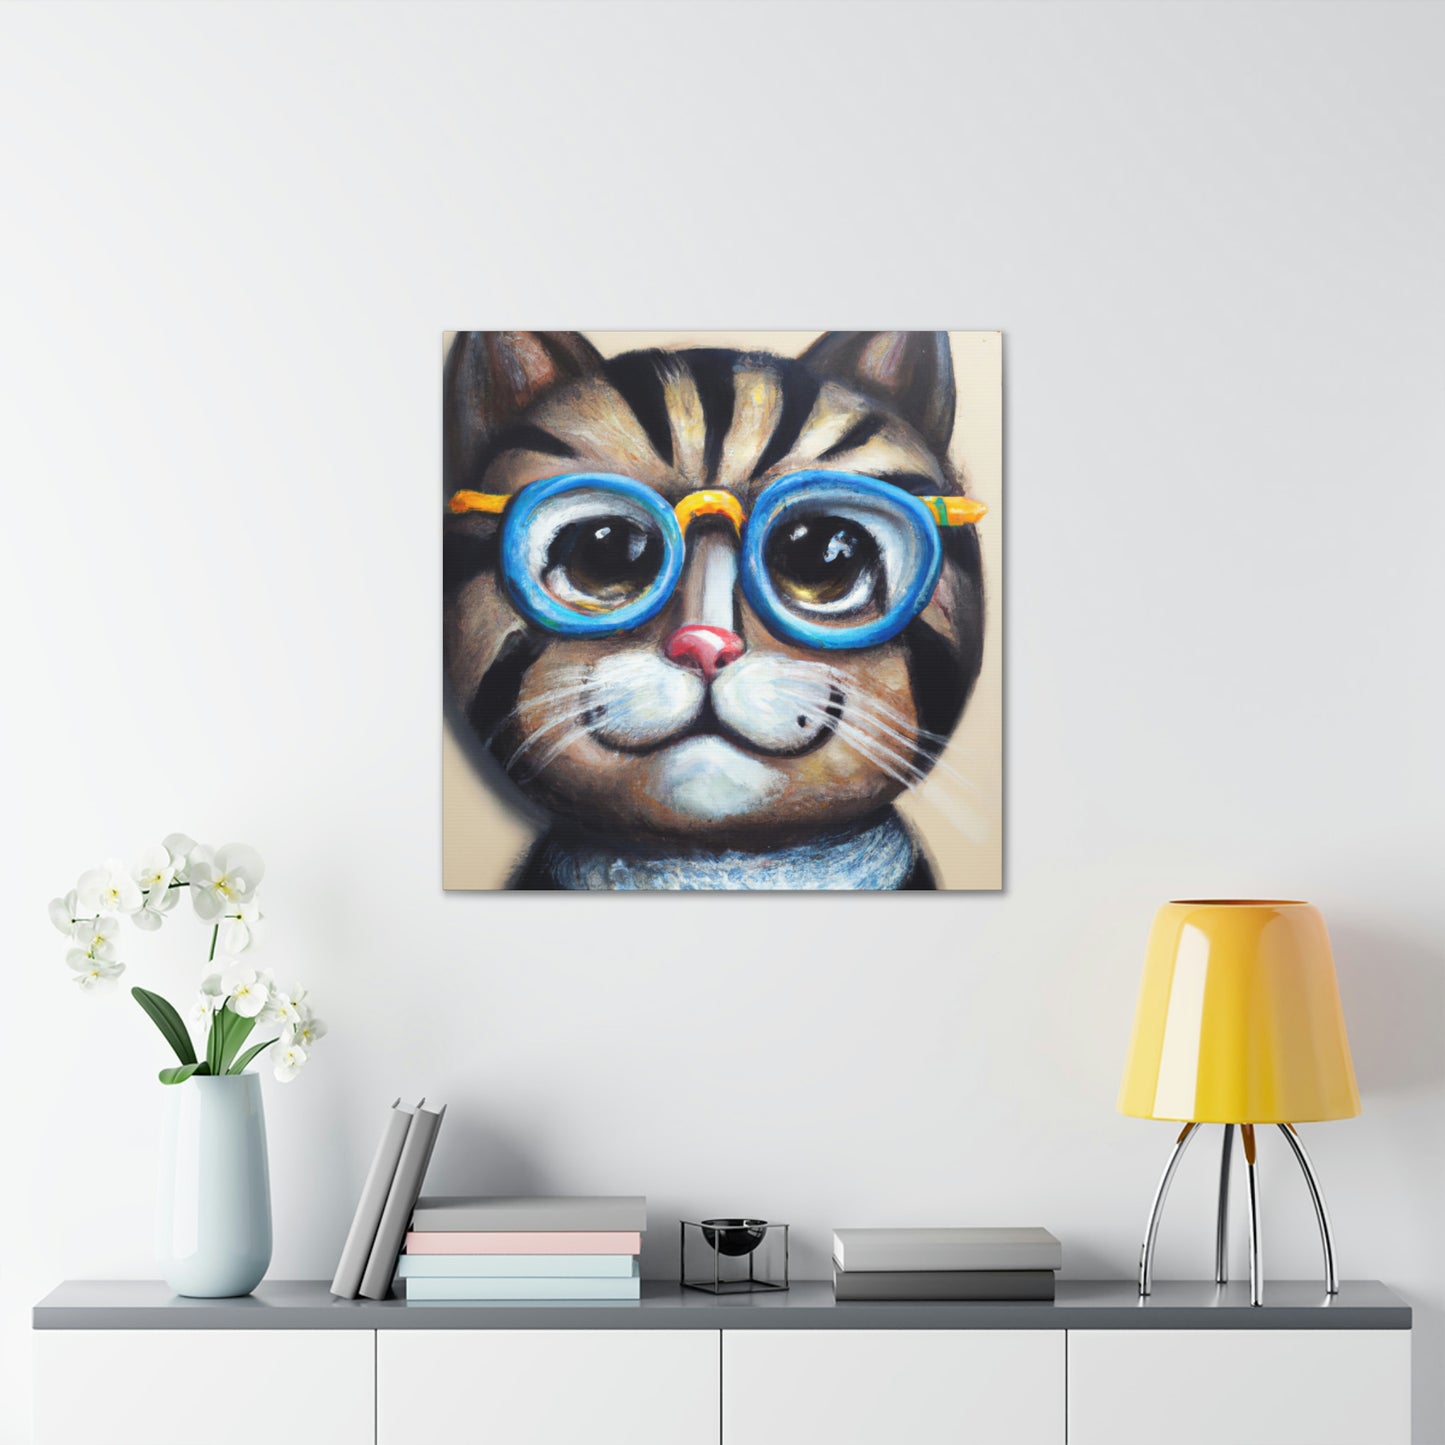 Hank the Huggable Cat - Cat Lovers Canvas Wall Art